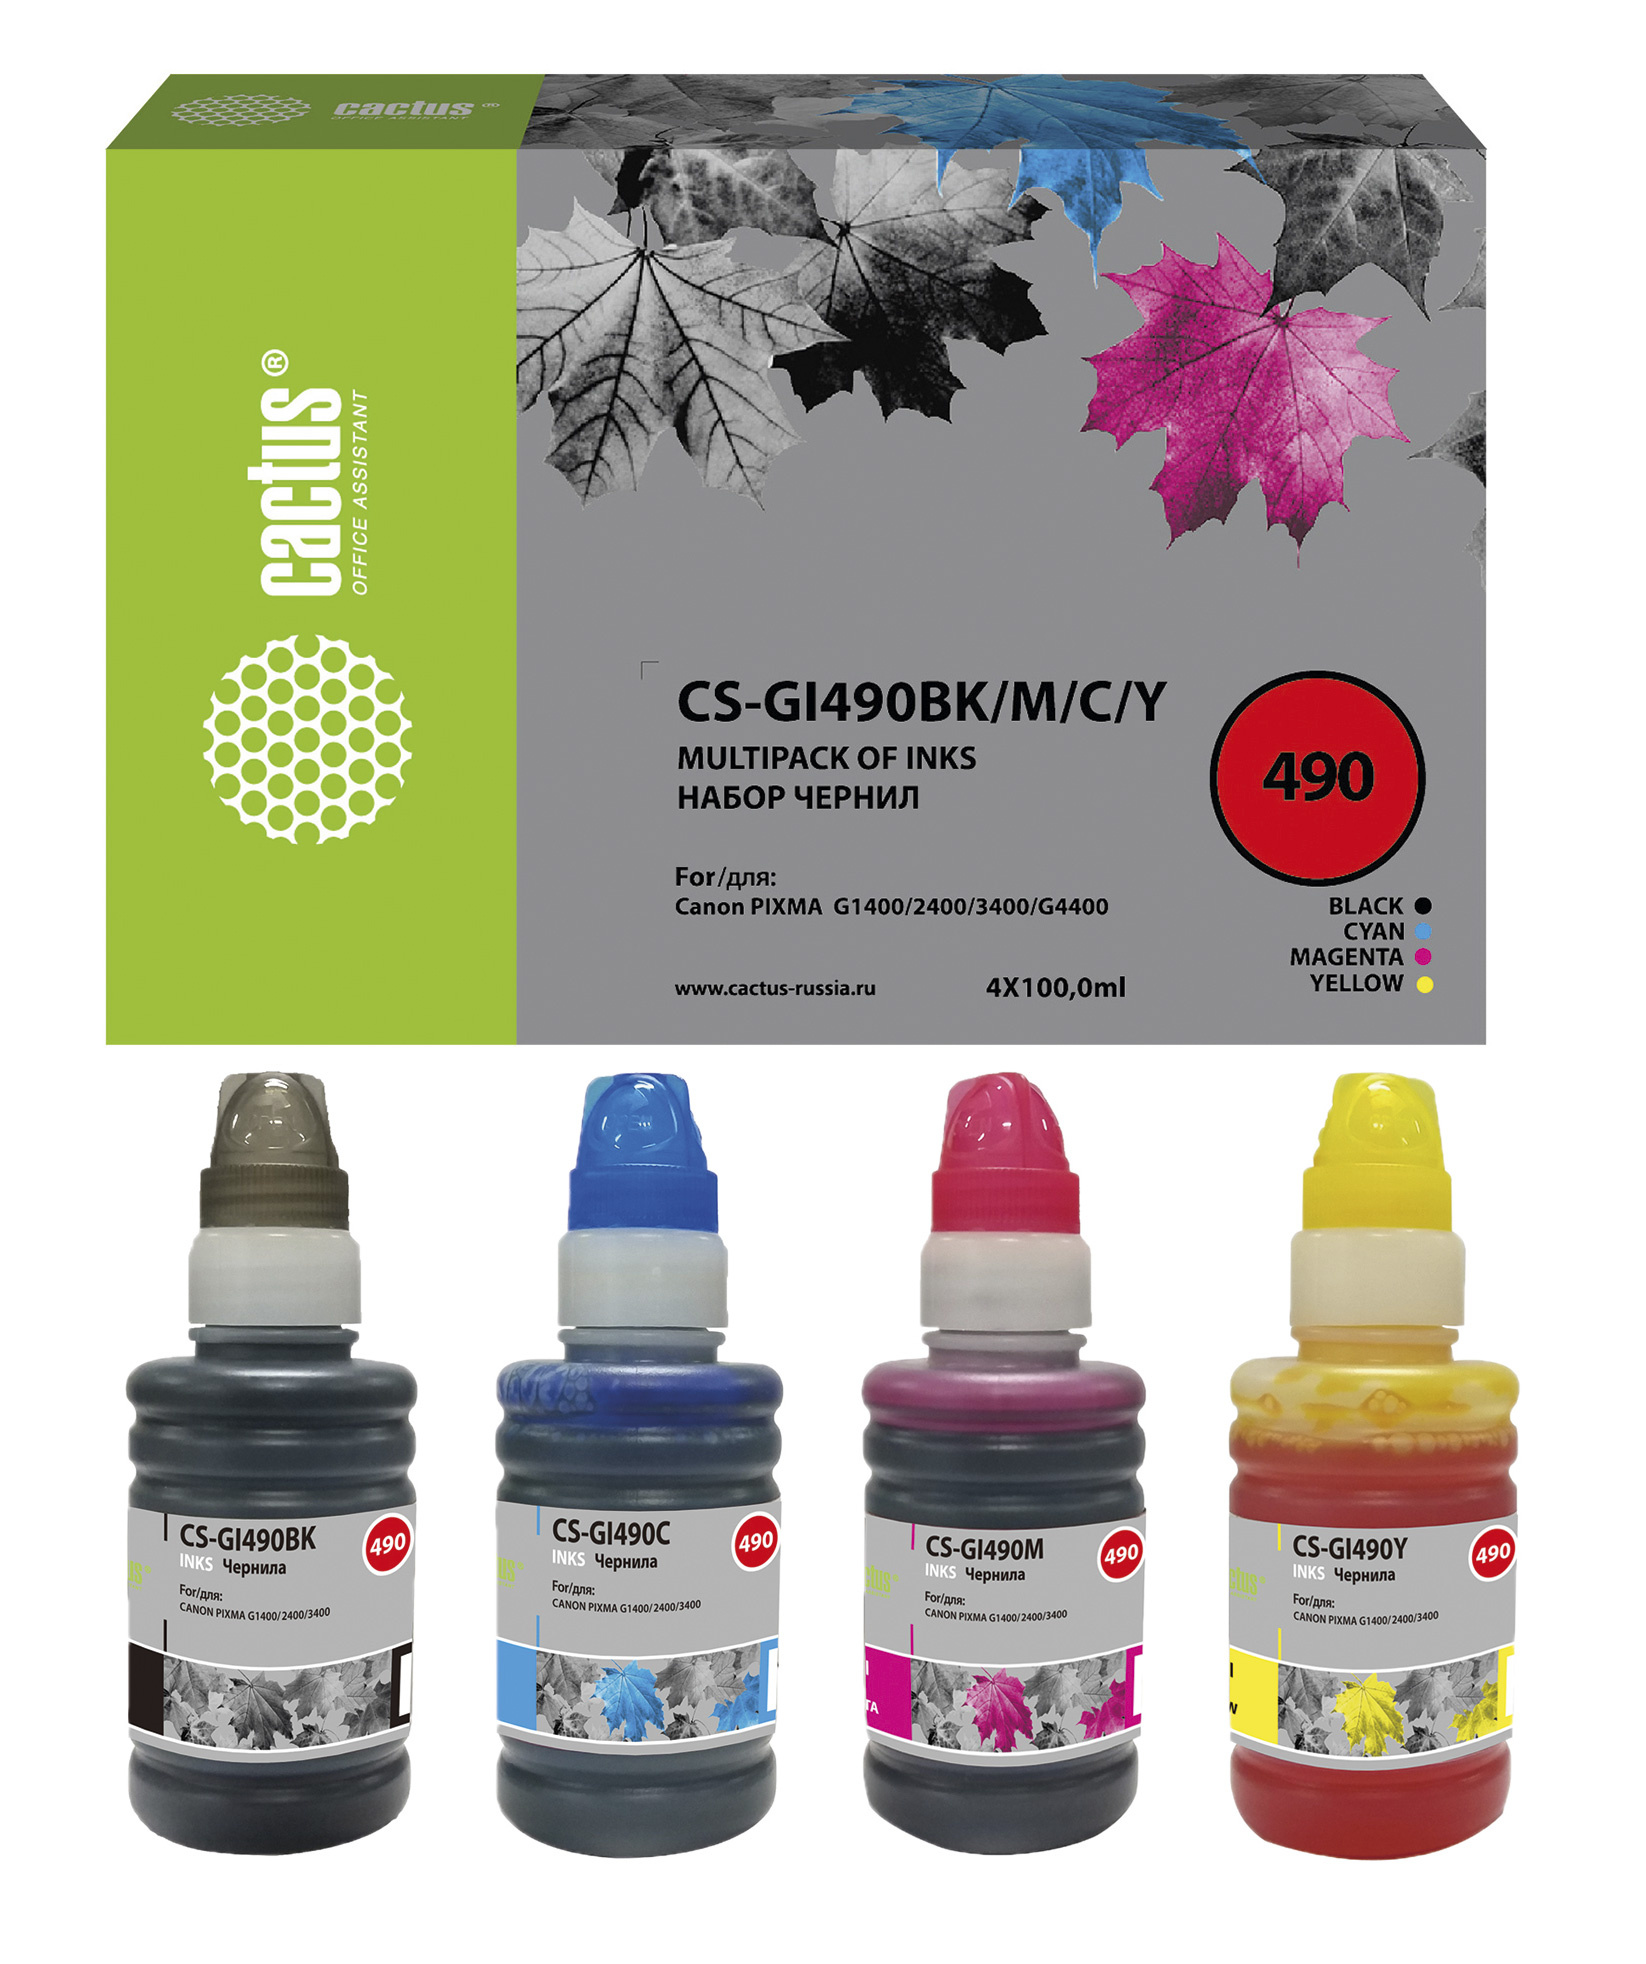 Чернила Cactus CS-GI490BK/M/C/Y GI-490 многоцветный набор 4x100мл для Canon Pixma G1400/G2400/G3400